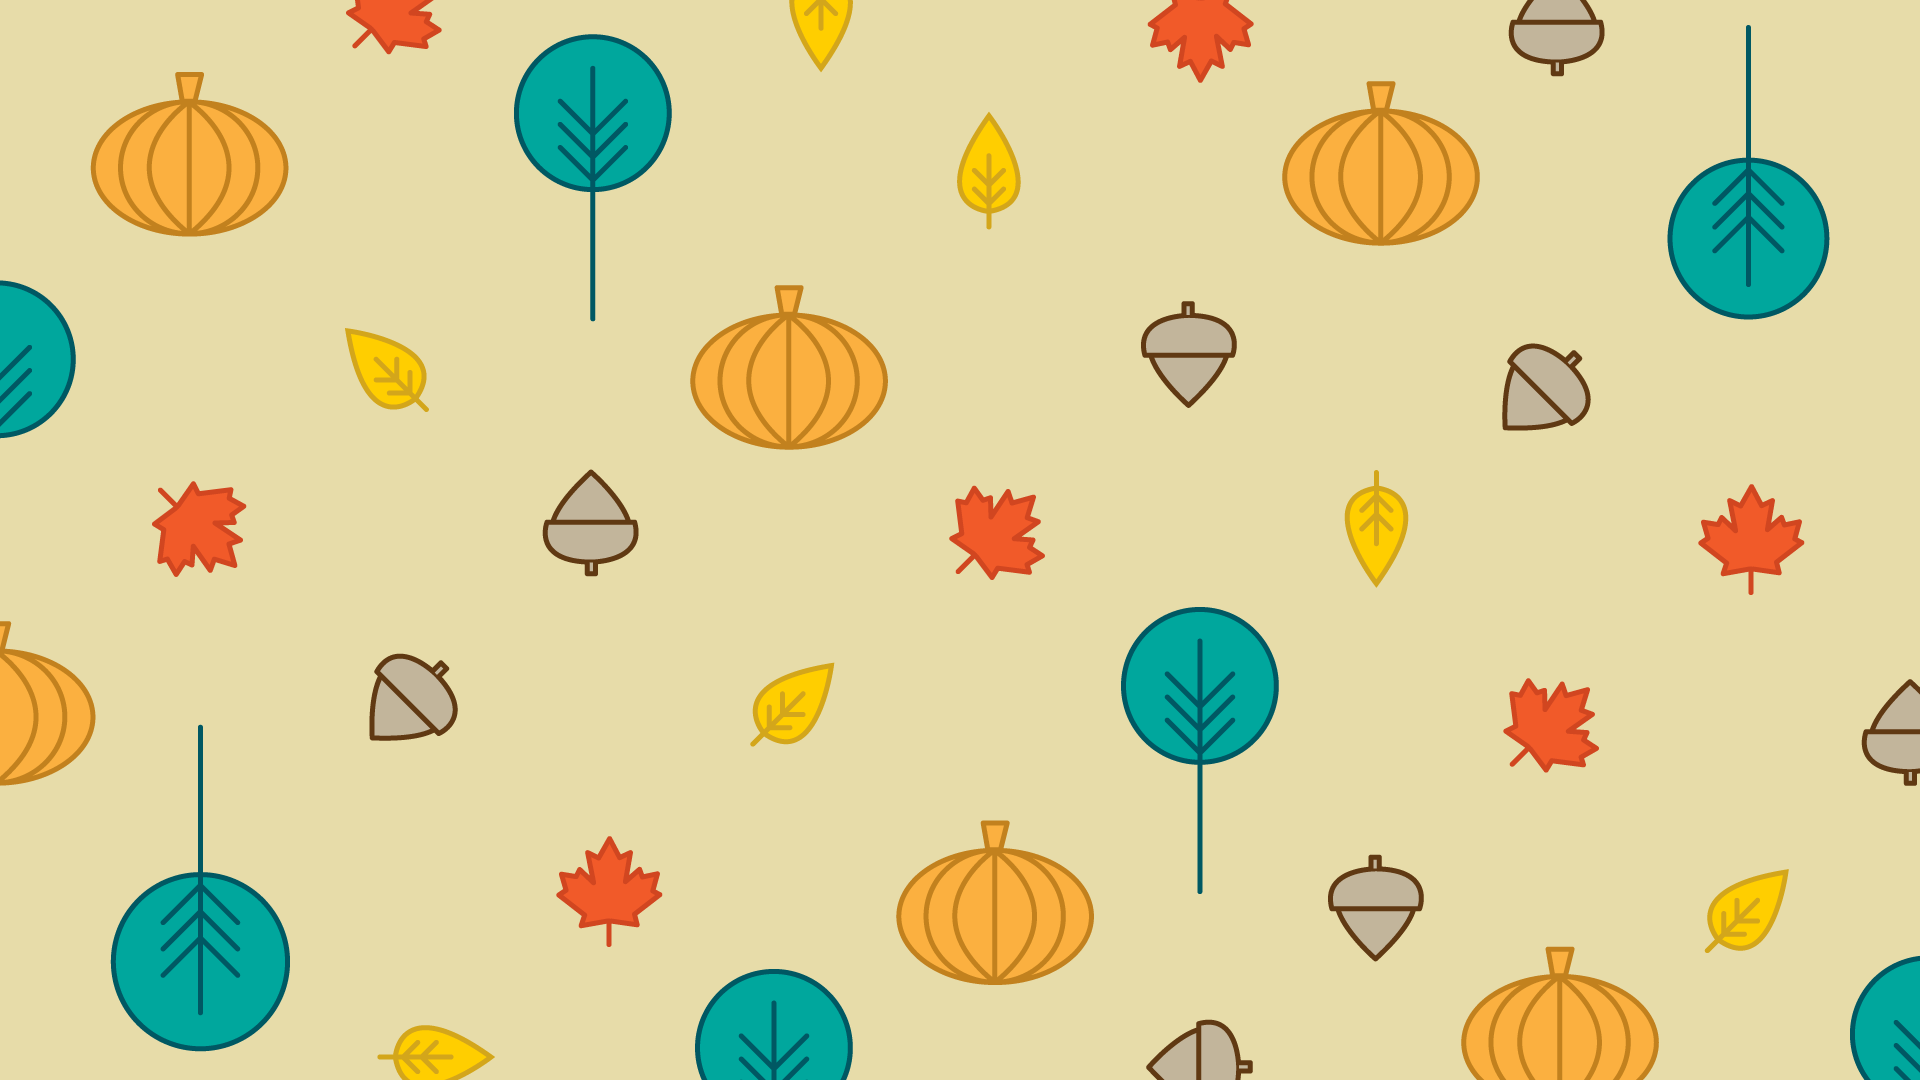 Autumn Cartoon Wallpapers - Top Free Autumn Cartoon Backgrounds ...